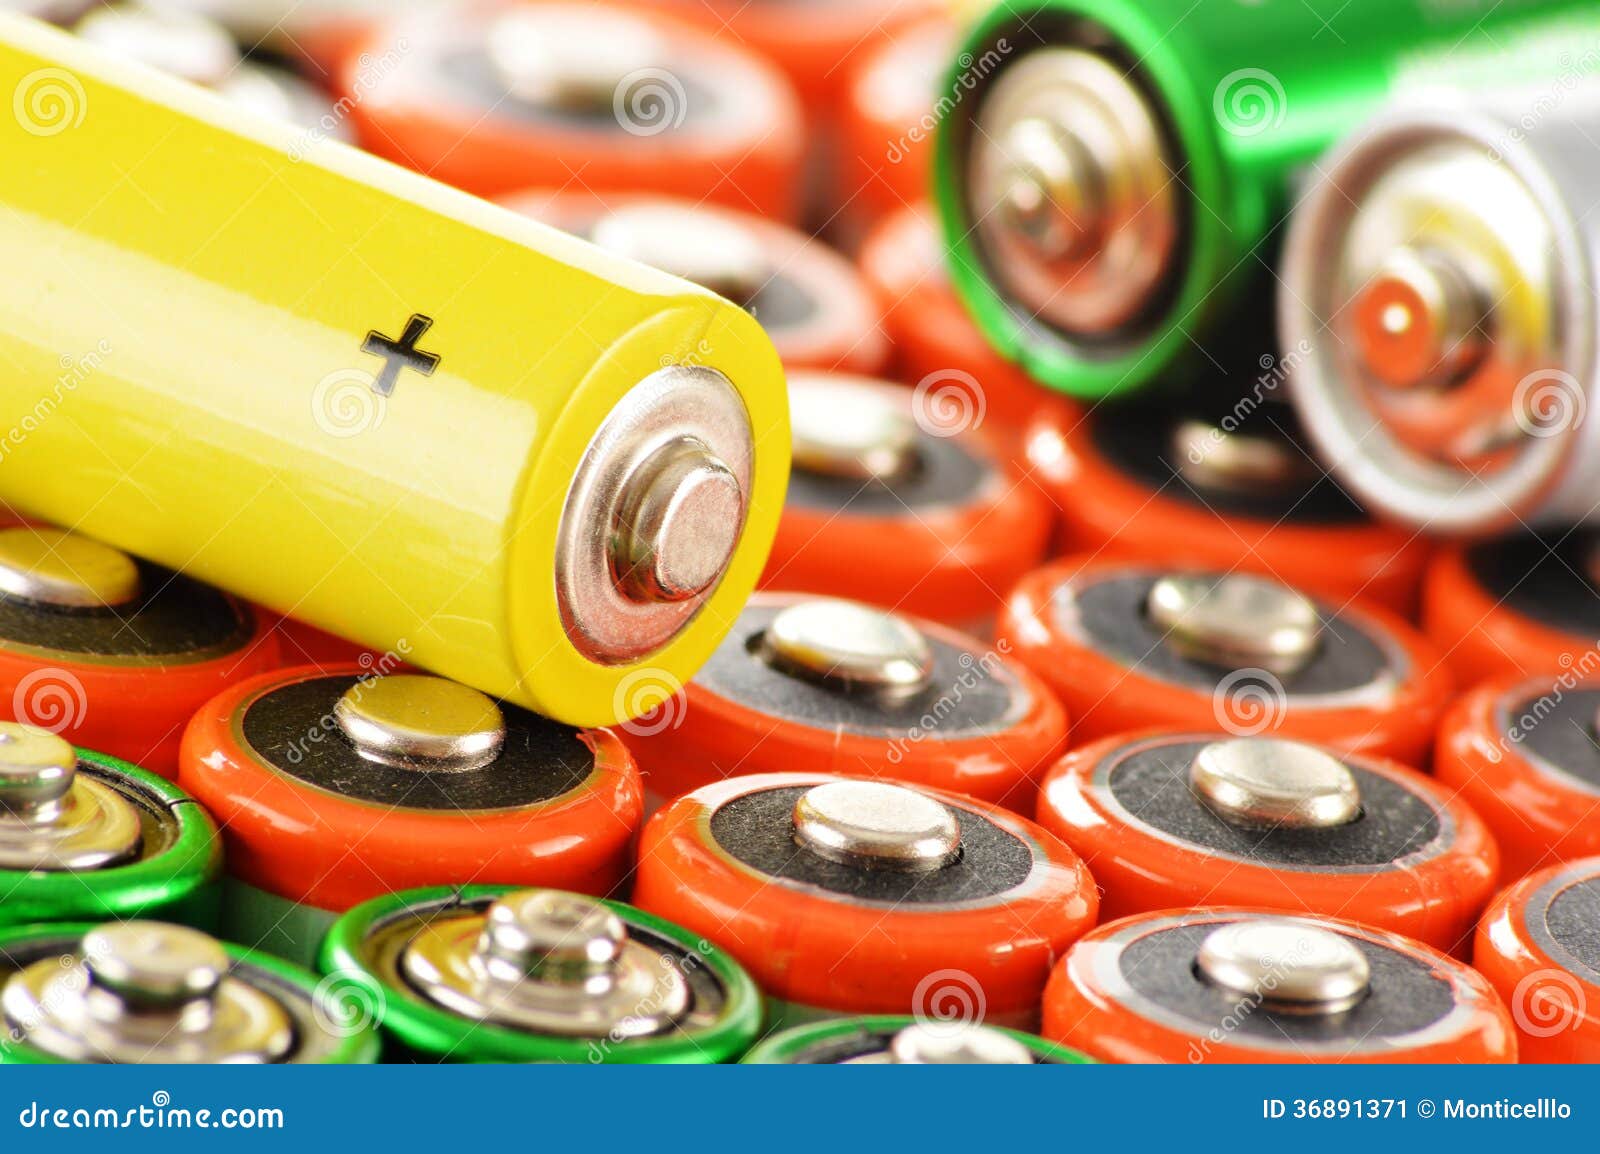 Samenstelling Met Alkalische Batterijen. Chemisch Afval Stock Afbeelding -  Image of elektro, verschil: 36891371